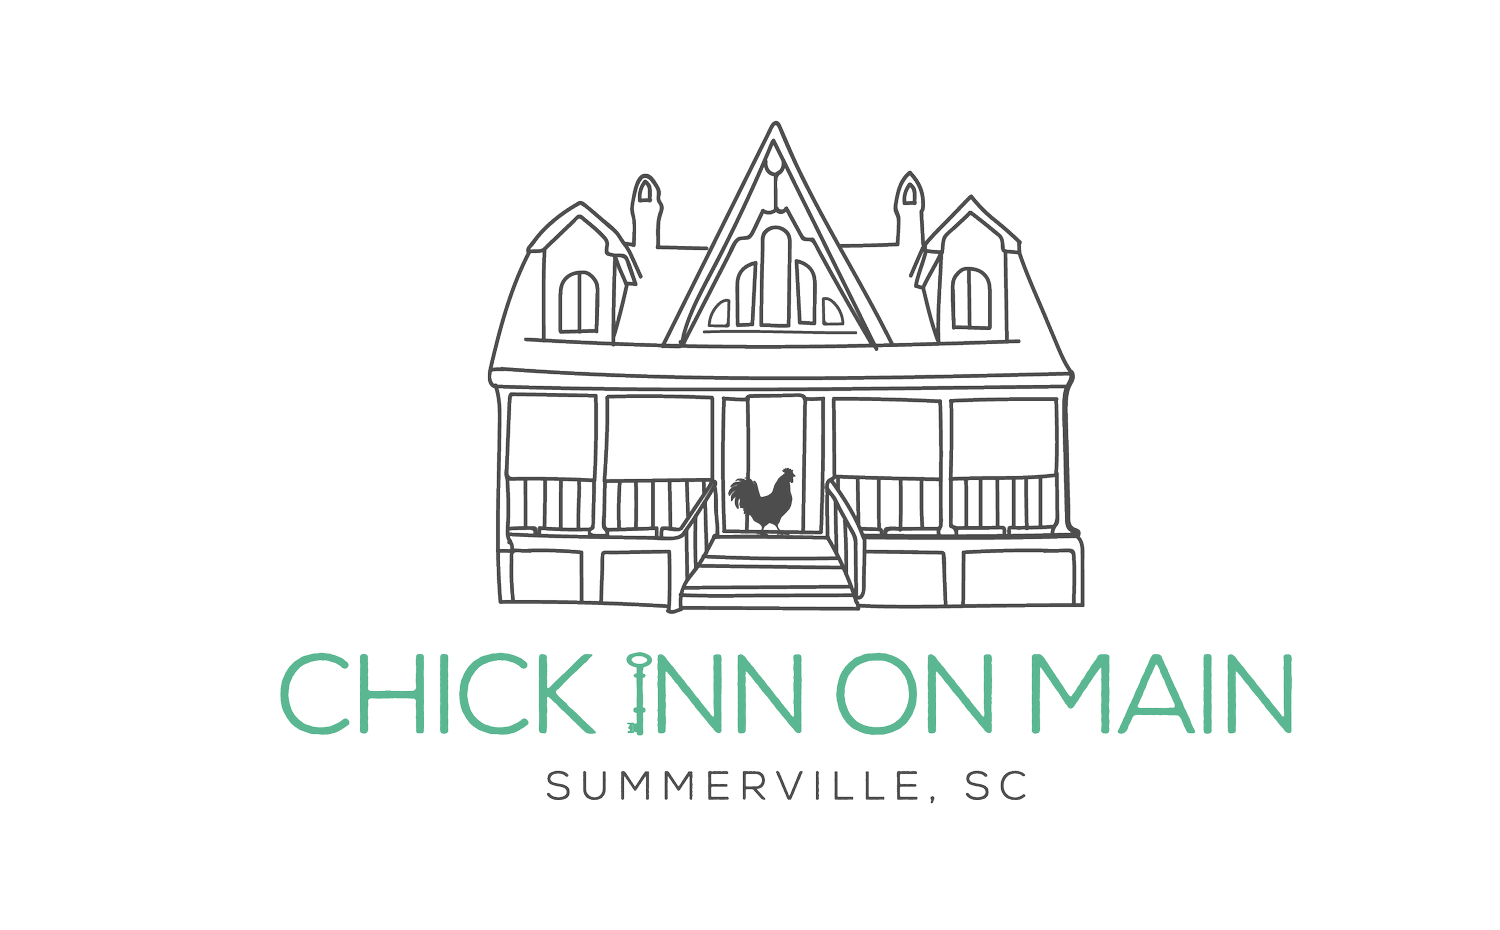 Chick Inn on Main